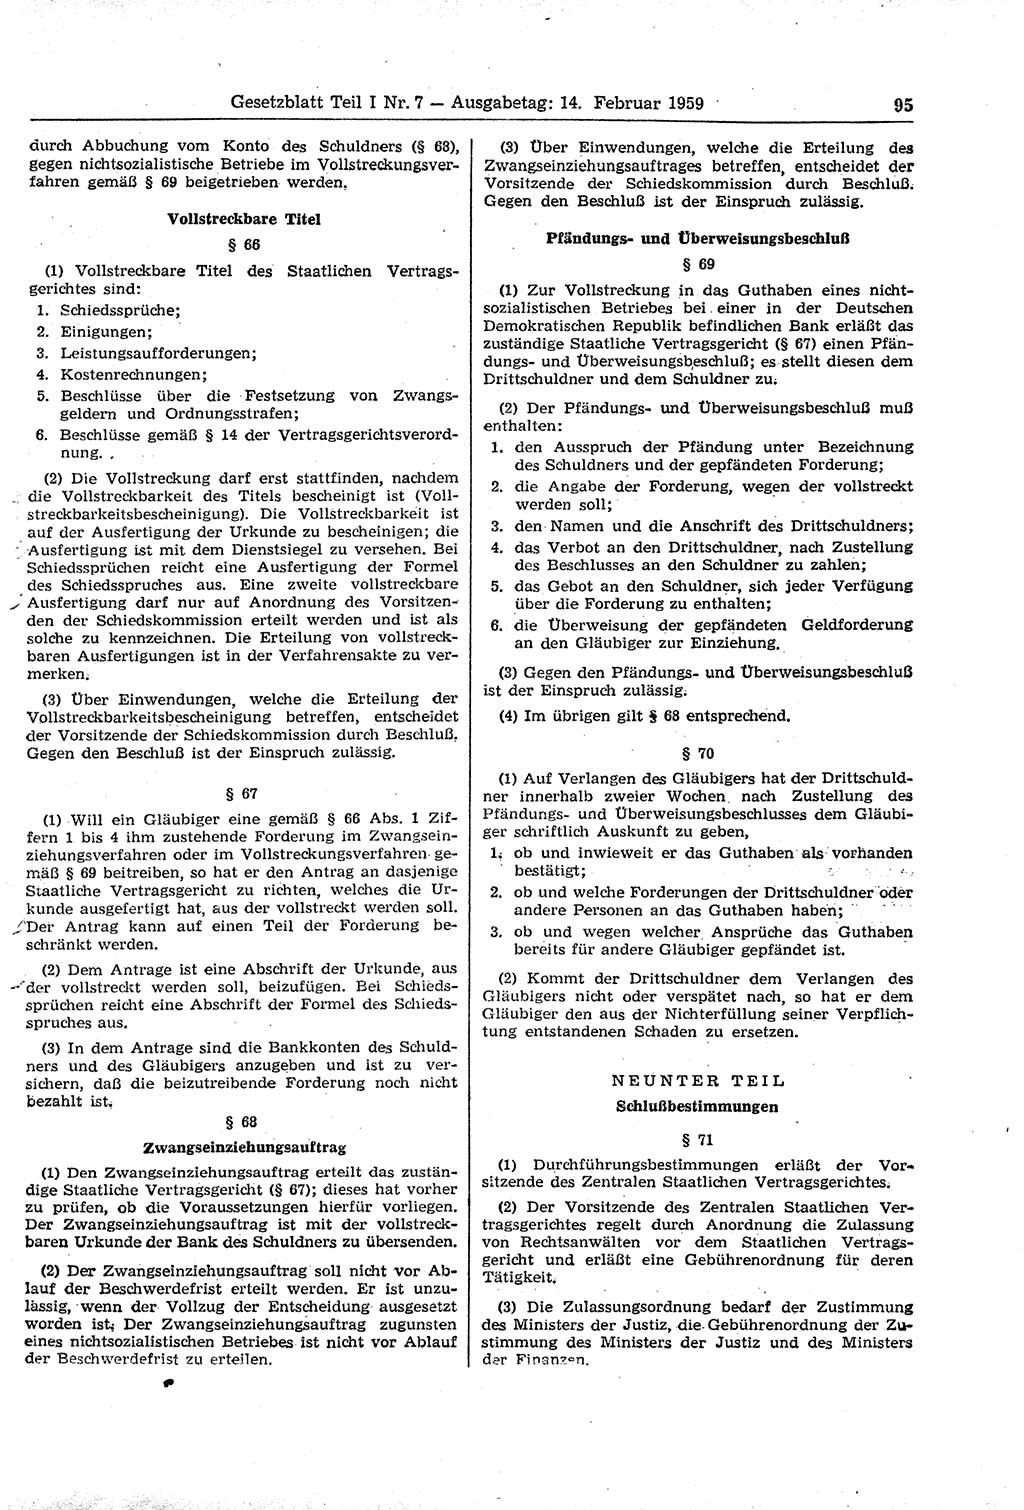 Gesetzblatt (GBl.) der Deutschen Demokratischen Republik (DDR) Teil Ⅰ 1959, Seite 95 (GBl. DDR Ⅰ 1959, S. 95)